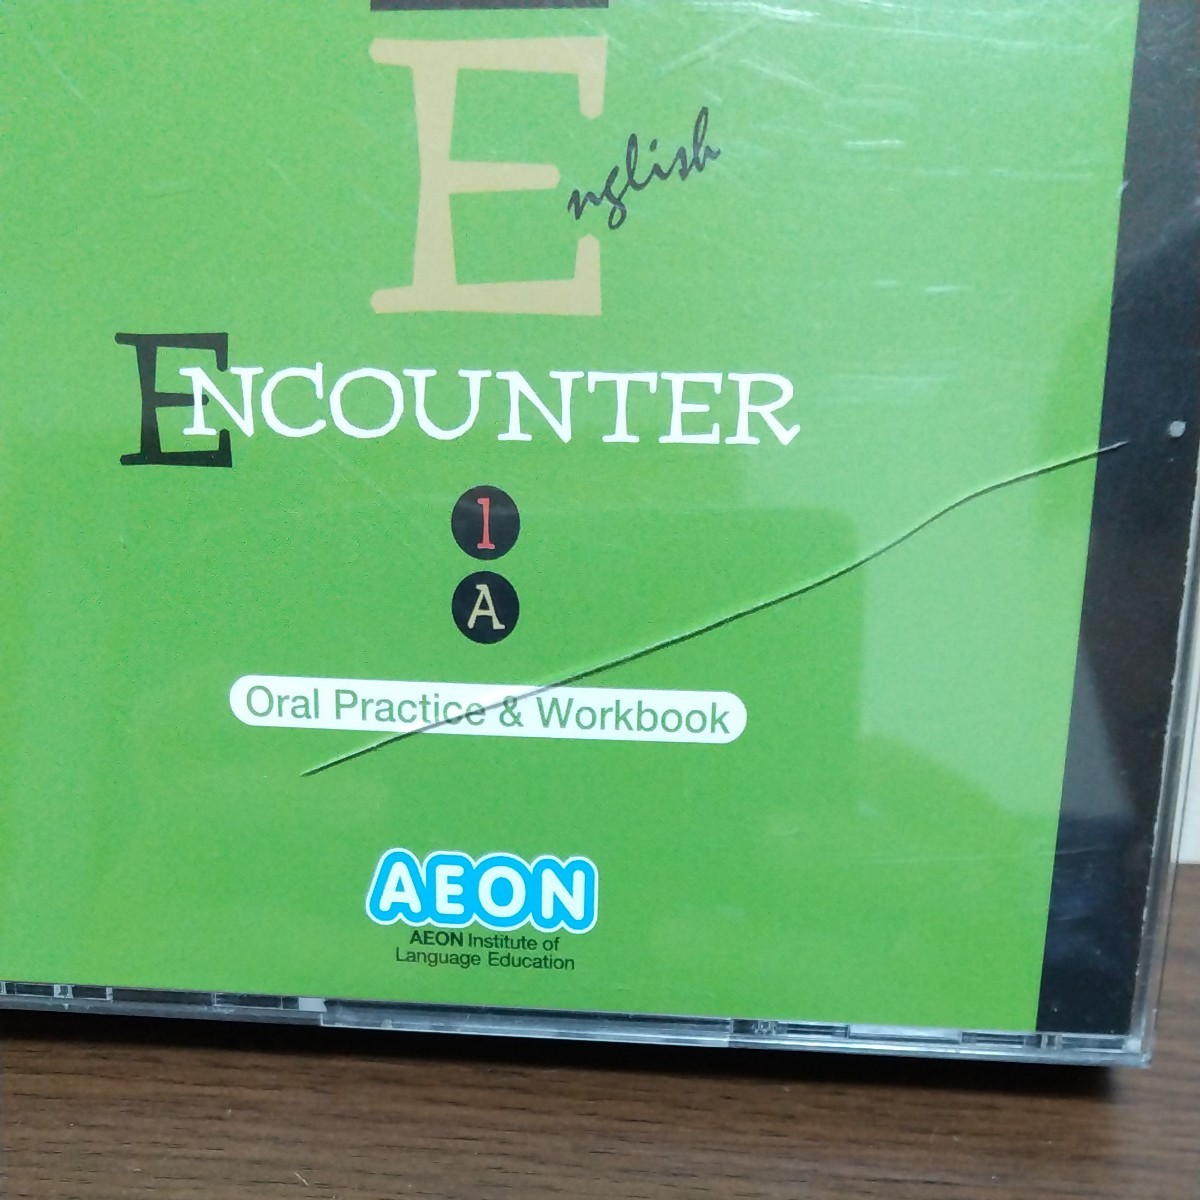 【AEON】イーオン英会話教材  [ENCOUNTER 1A/1B、2A/2B]